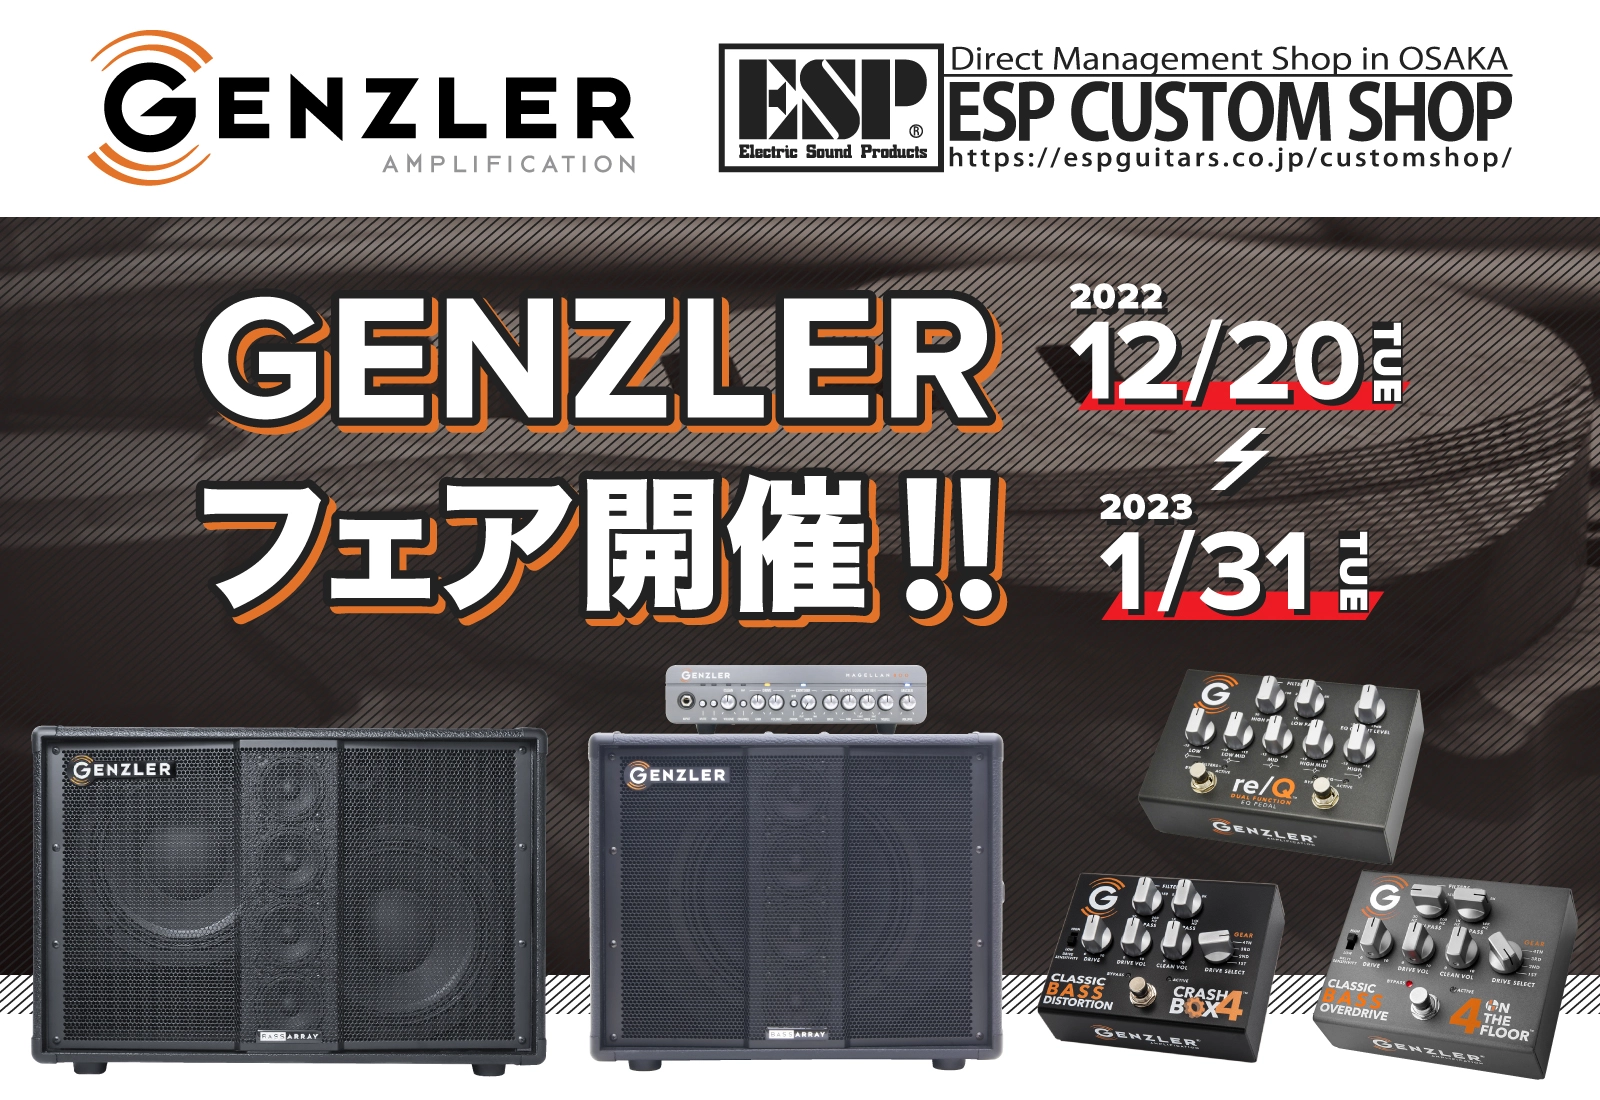 【試奏情報】大阪・梅田ESPカスタムショップにてGENZLERフェアを開催いたします